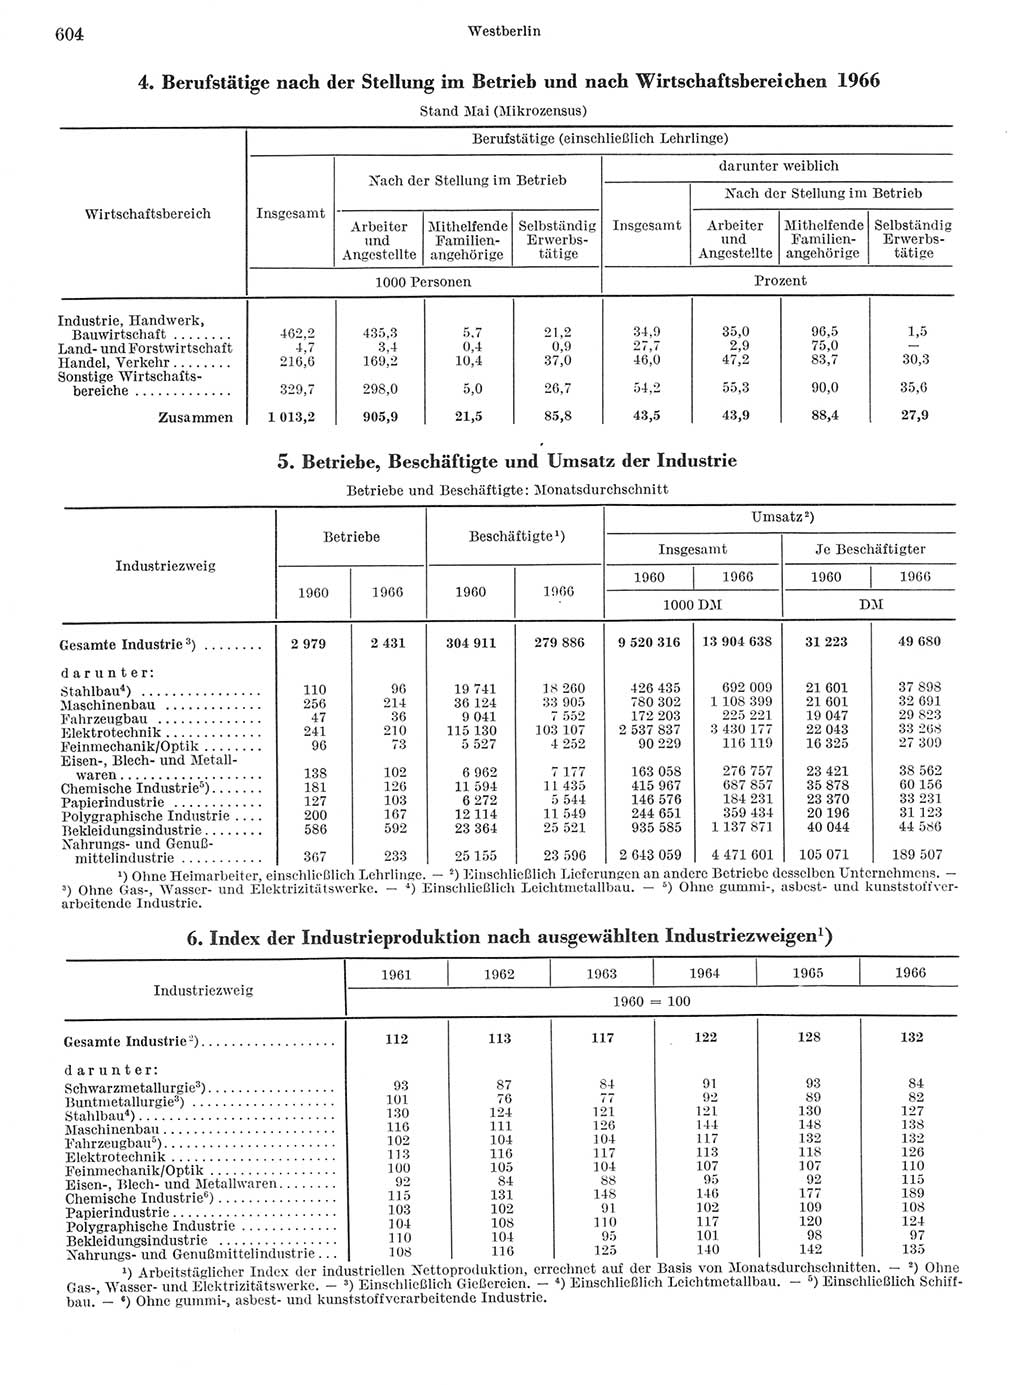 Statistisches Jahrbuch der Deutschen Demokratischen Republik (DDR) 1968, Seite 604 (Stat. Jb. DDR 1968, S. 604)